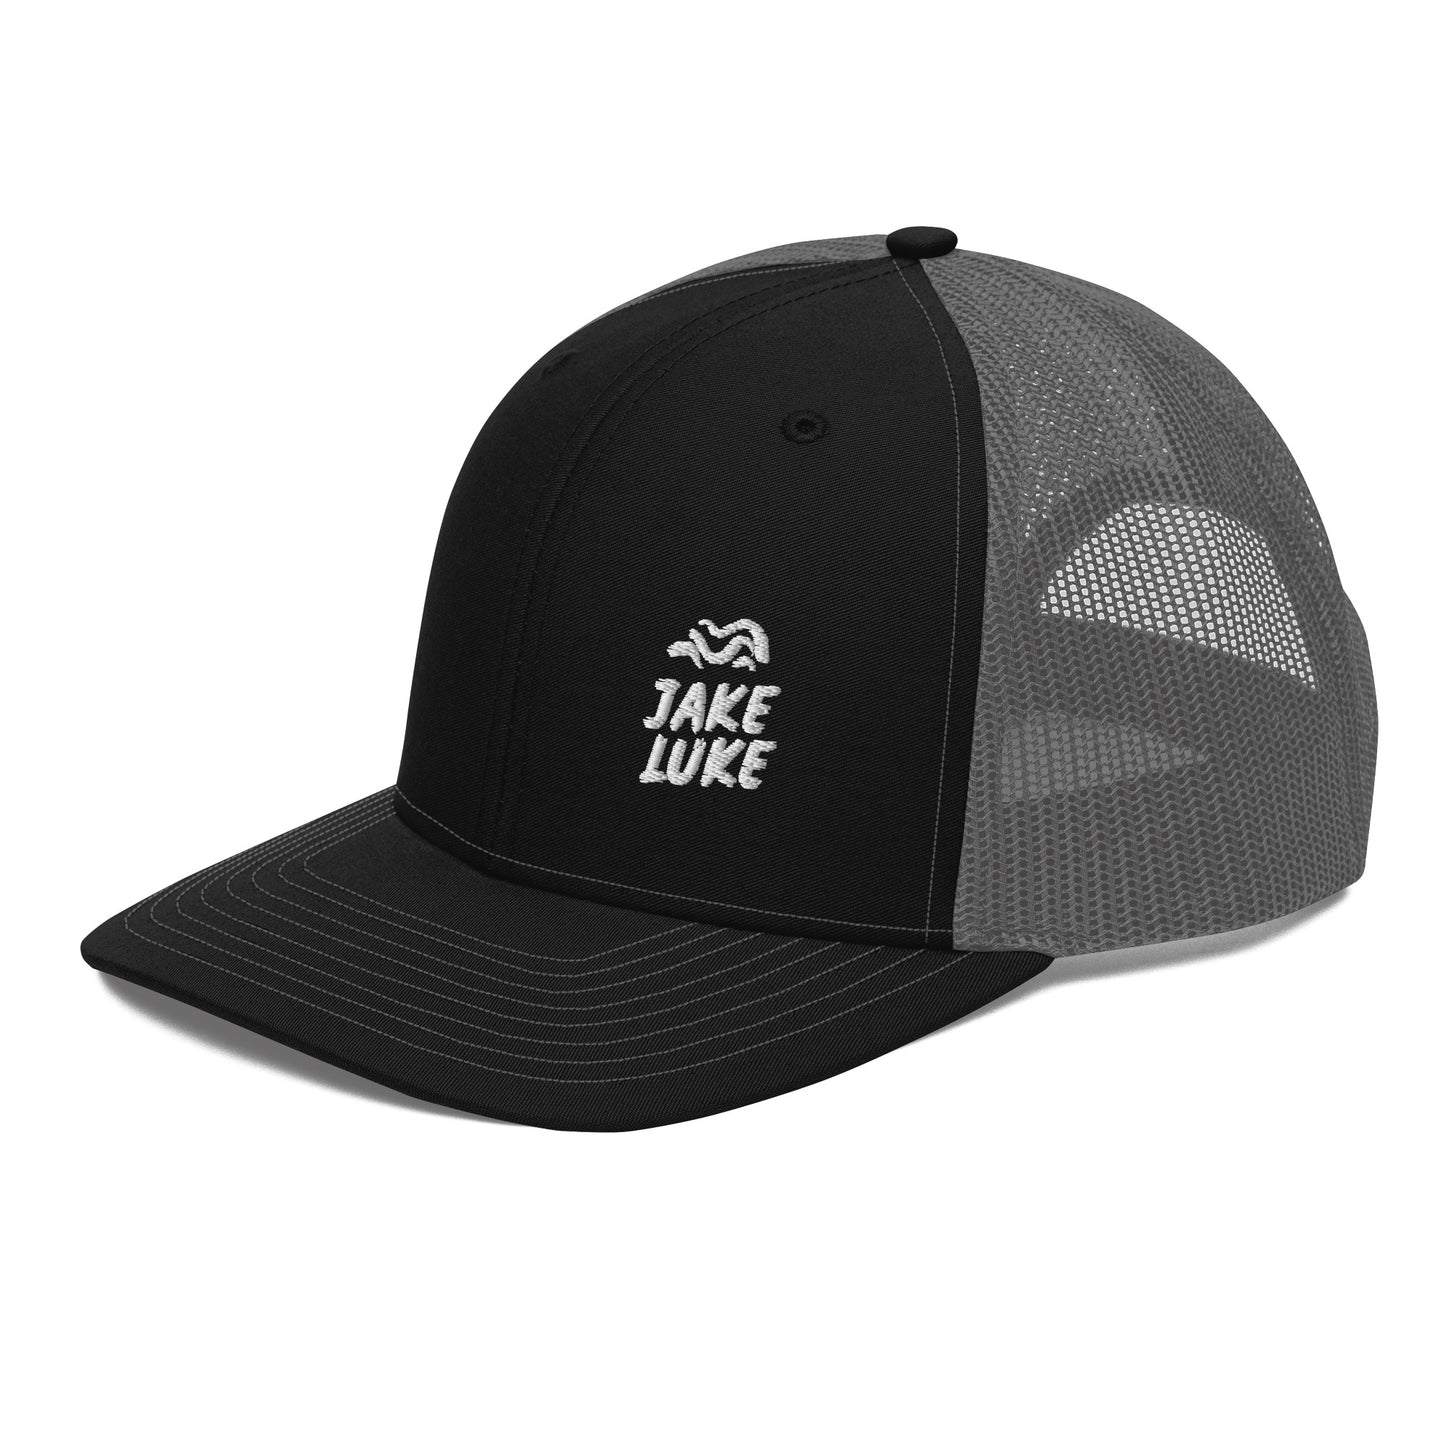 JAKE LUKE - Trucker Cap